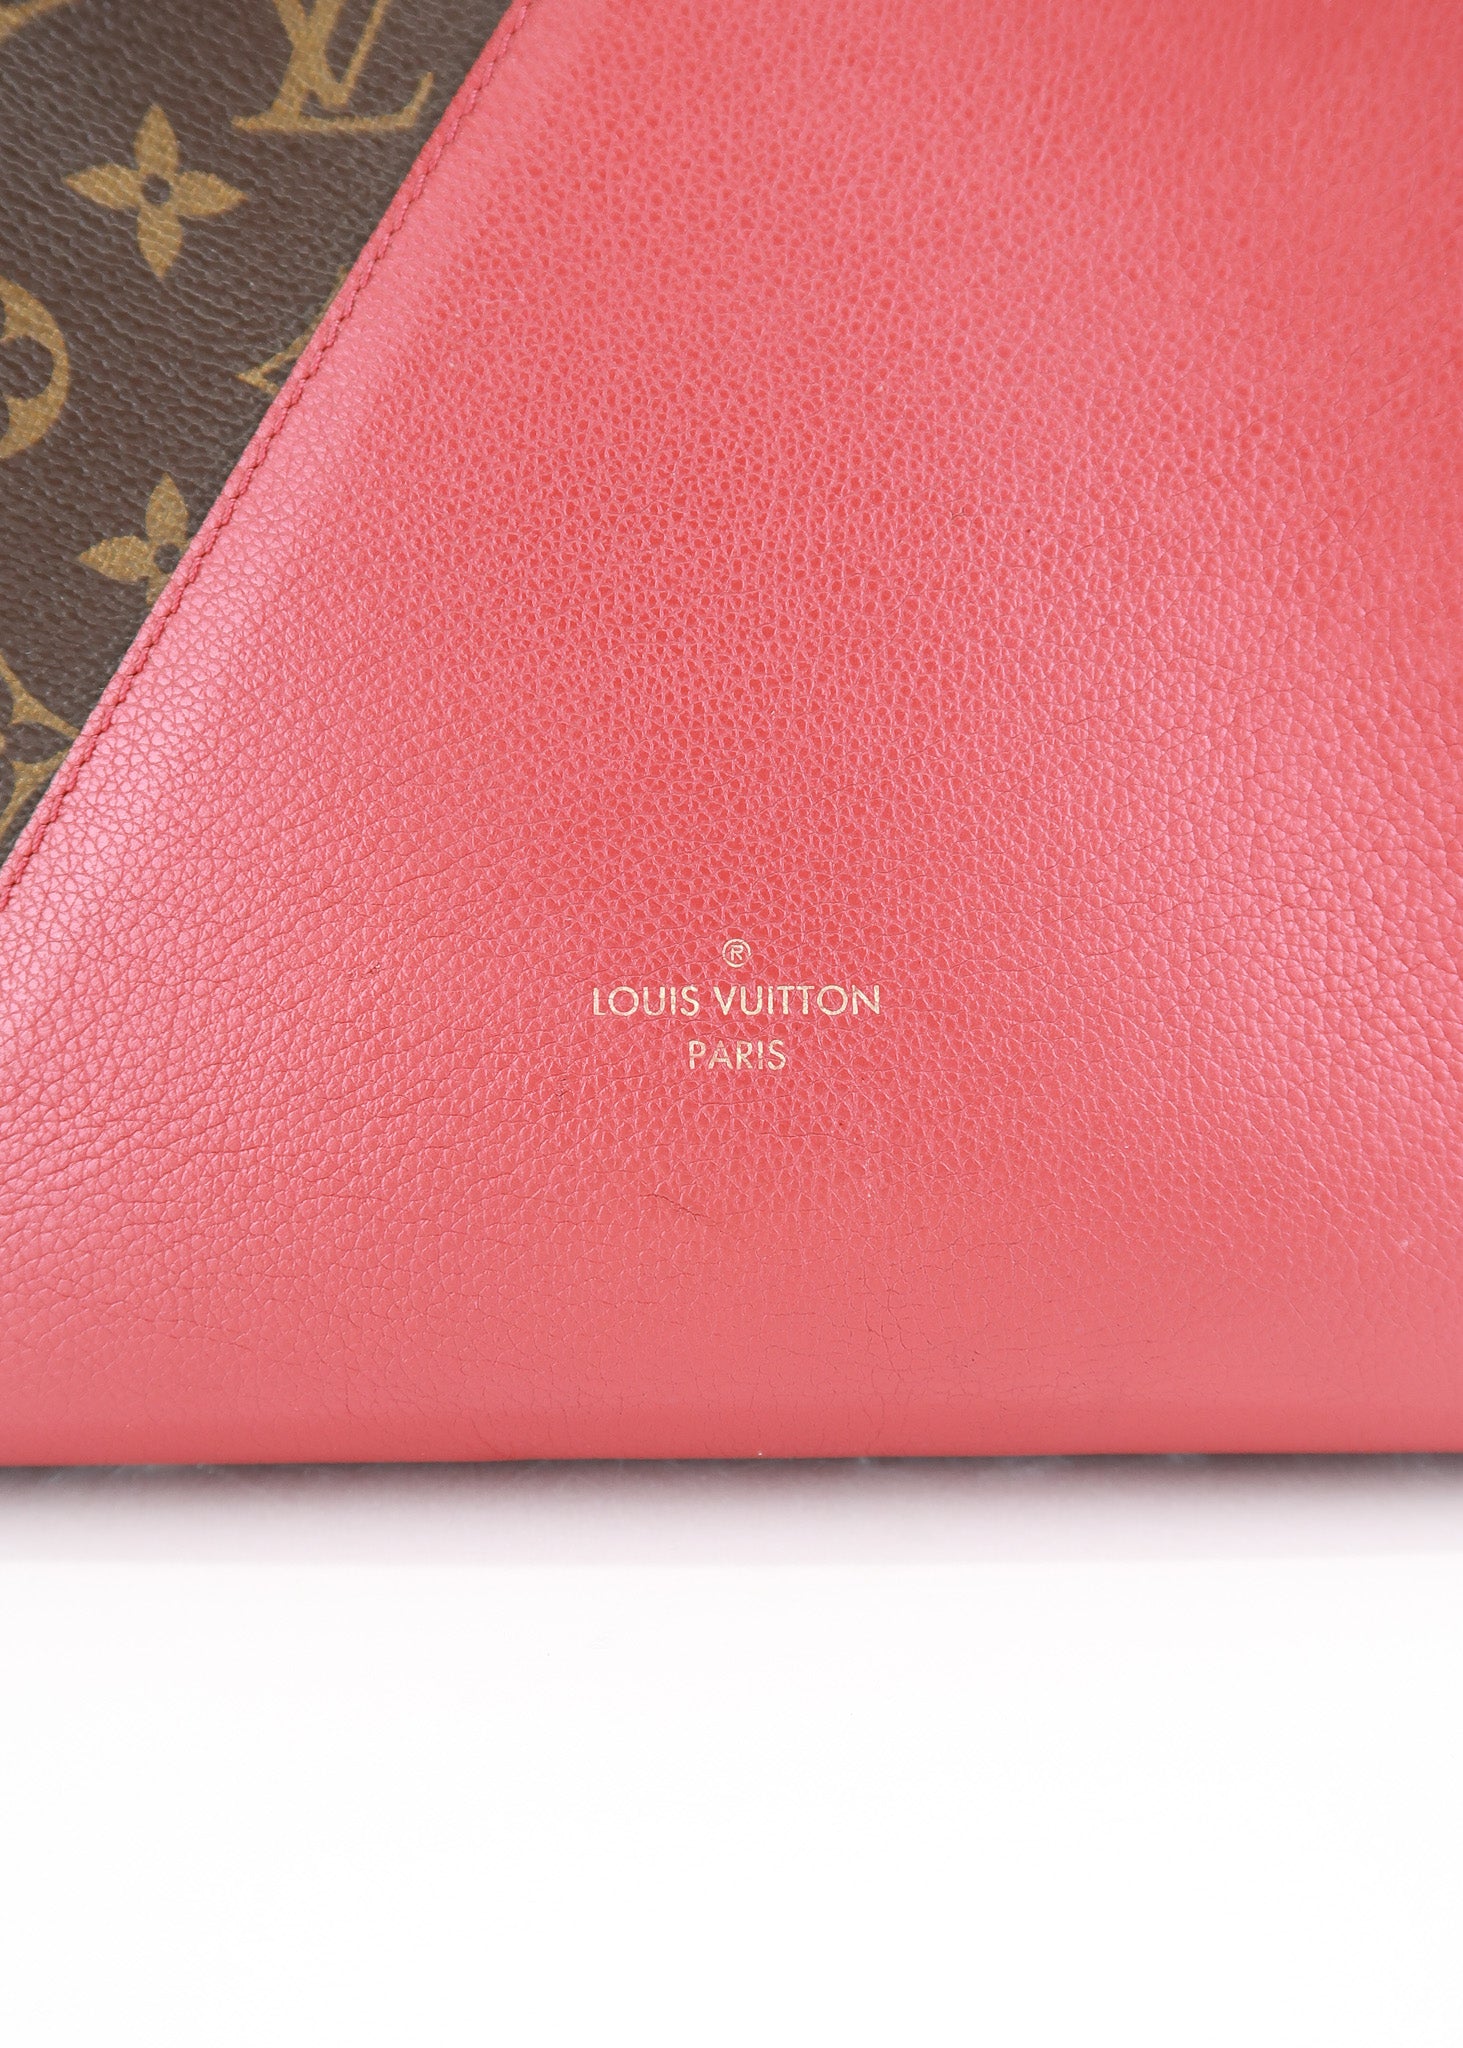 Louis Vuitton Monogram Canvas & Red Leather Kimono Wallet